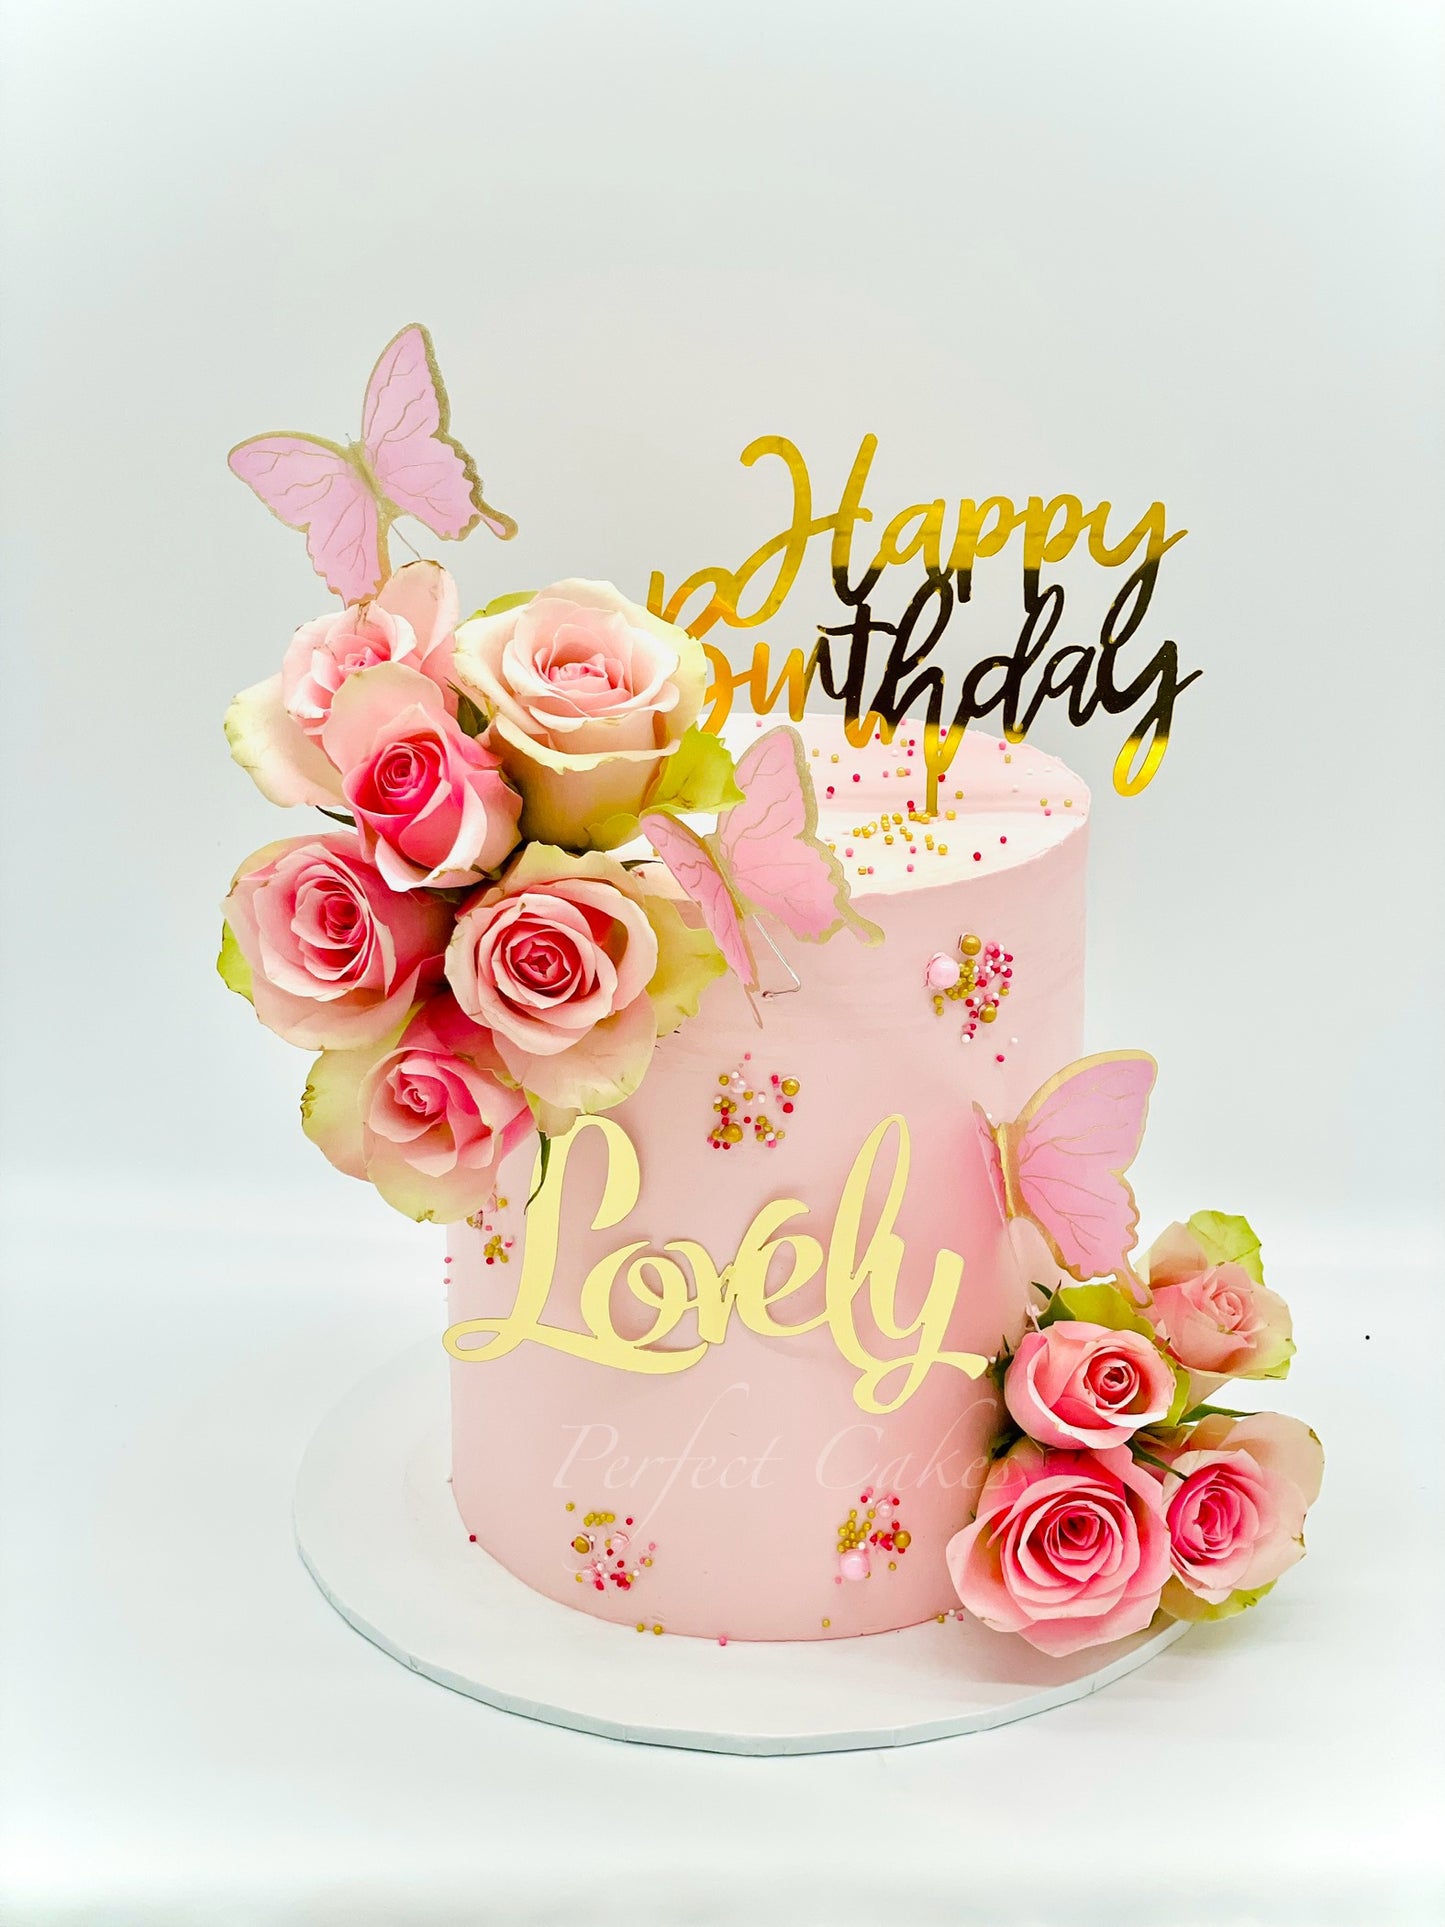 Lovely Rose Cake